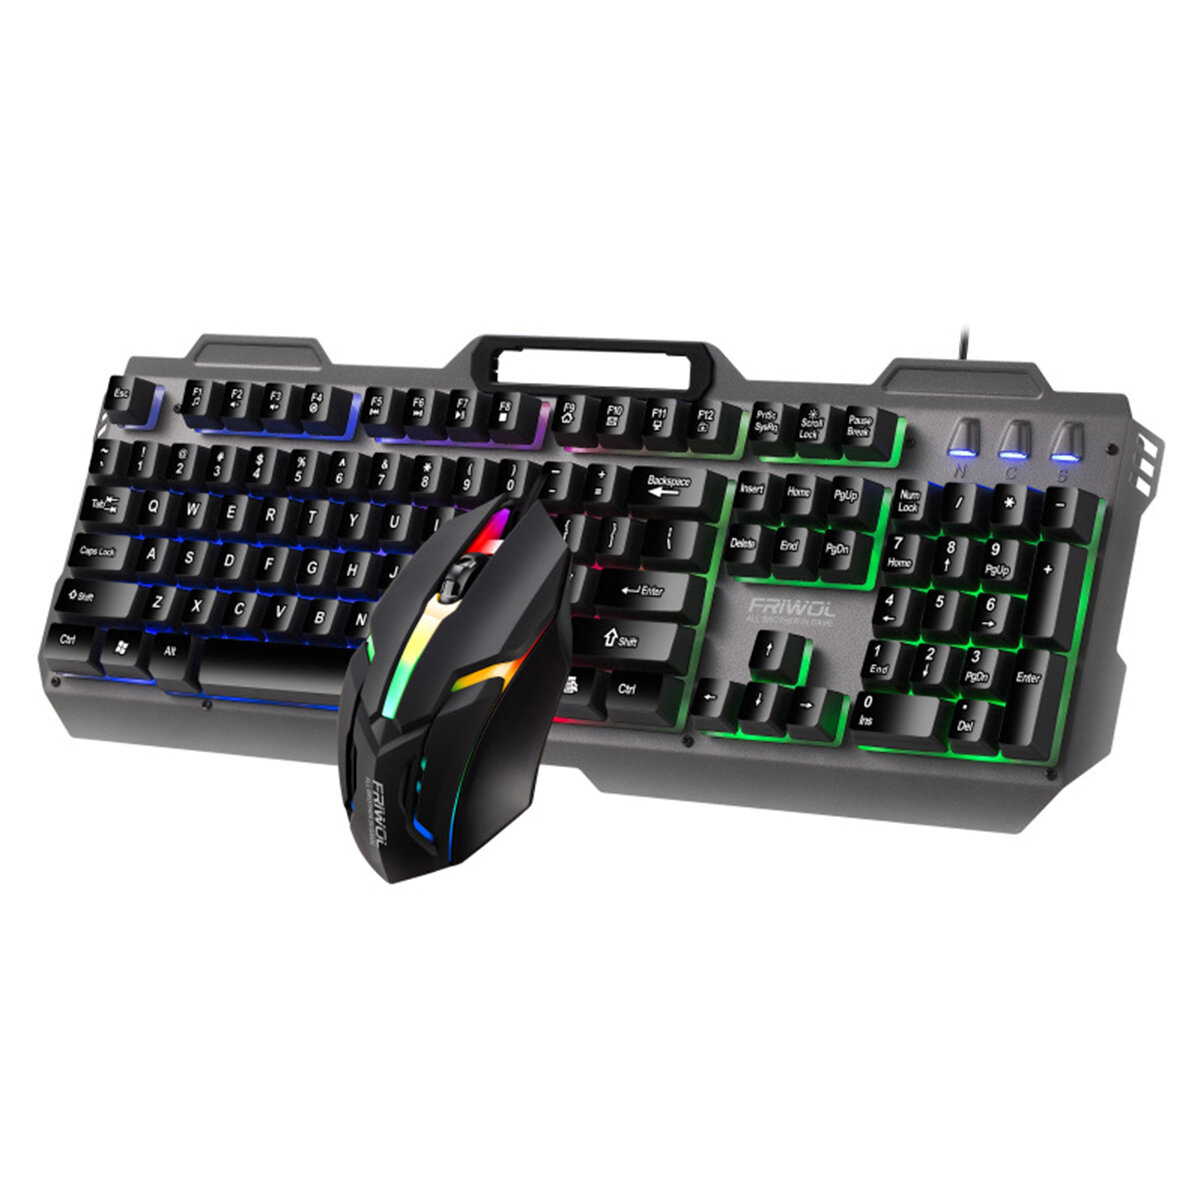 

KT600 Проводной Клавиатура и Мышь Набор 104 клавиш Металлическая панель с подсветкой RGB Механический Feeling Gaming Кла